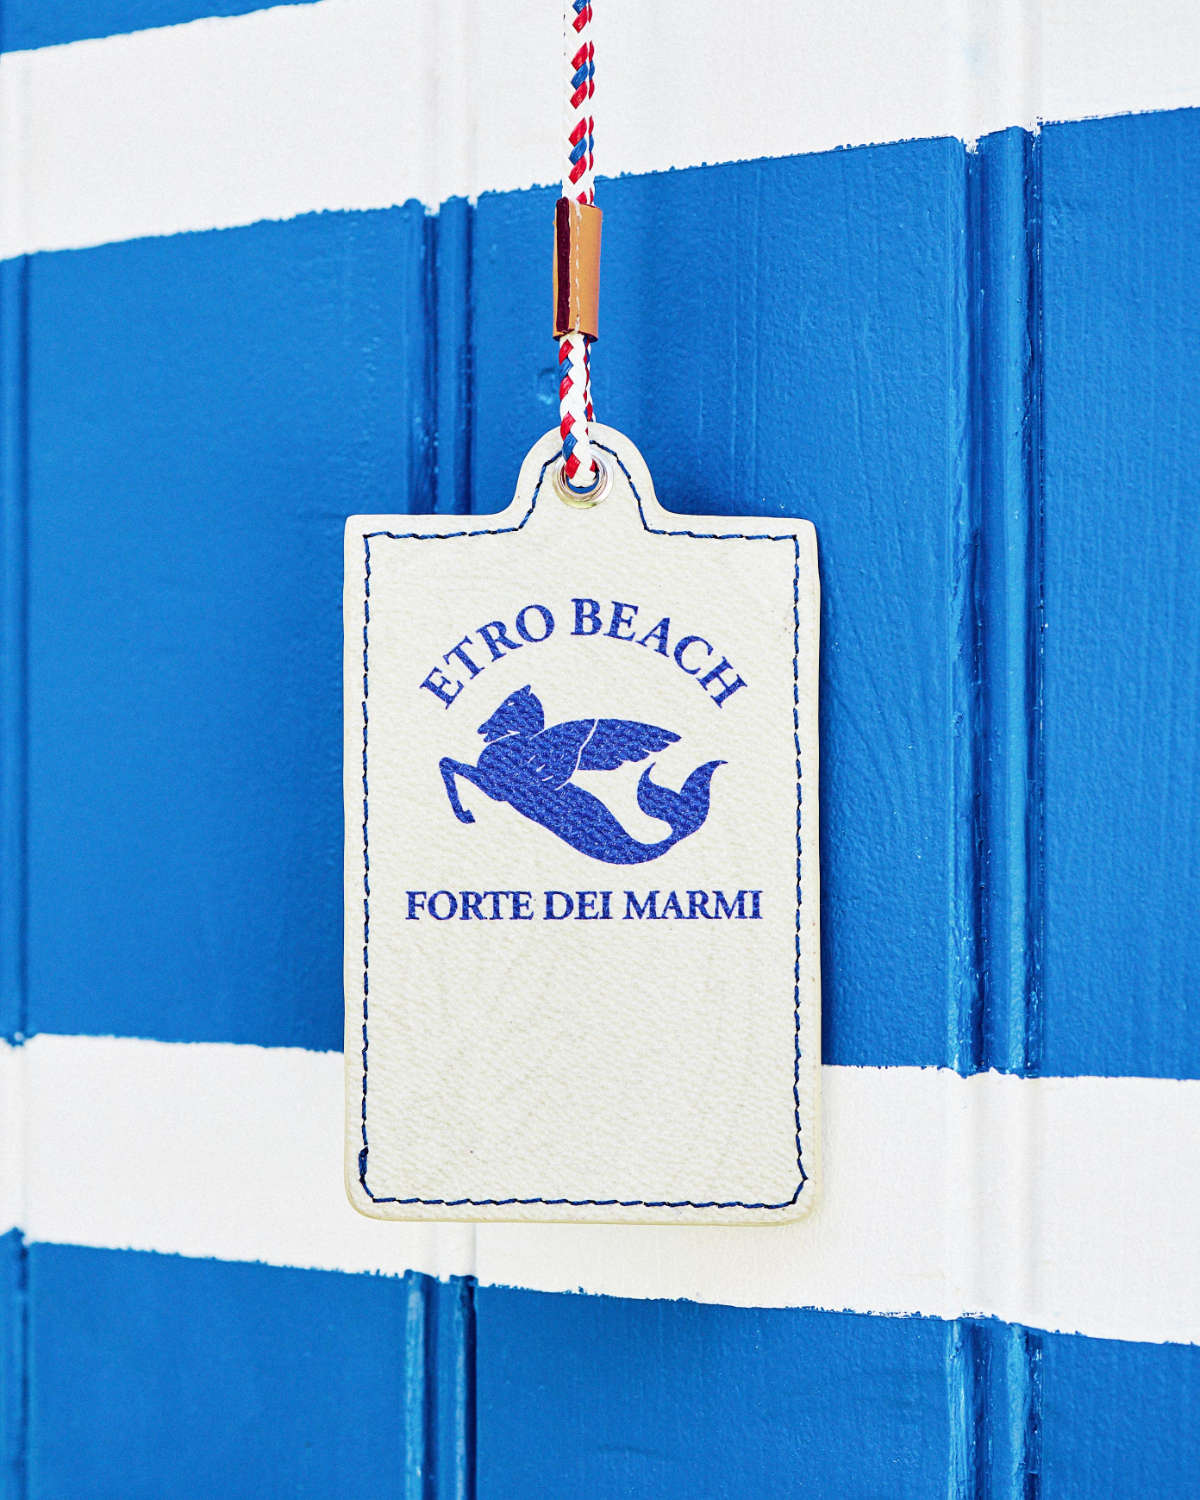 New Etro Beach Forte Dei Marmi Capsule Collection